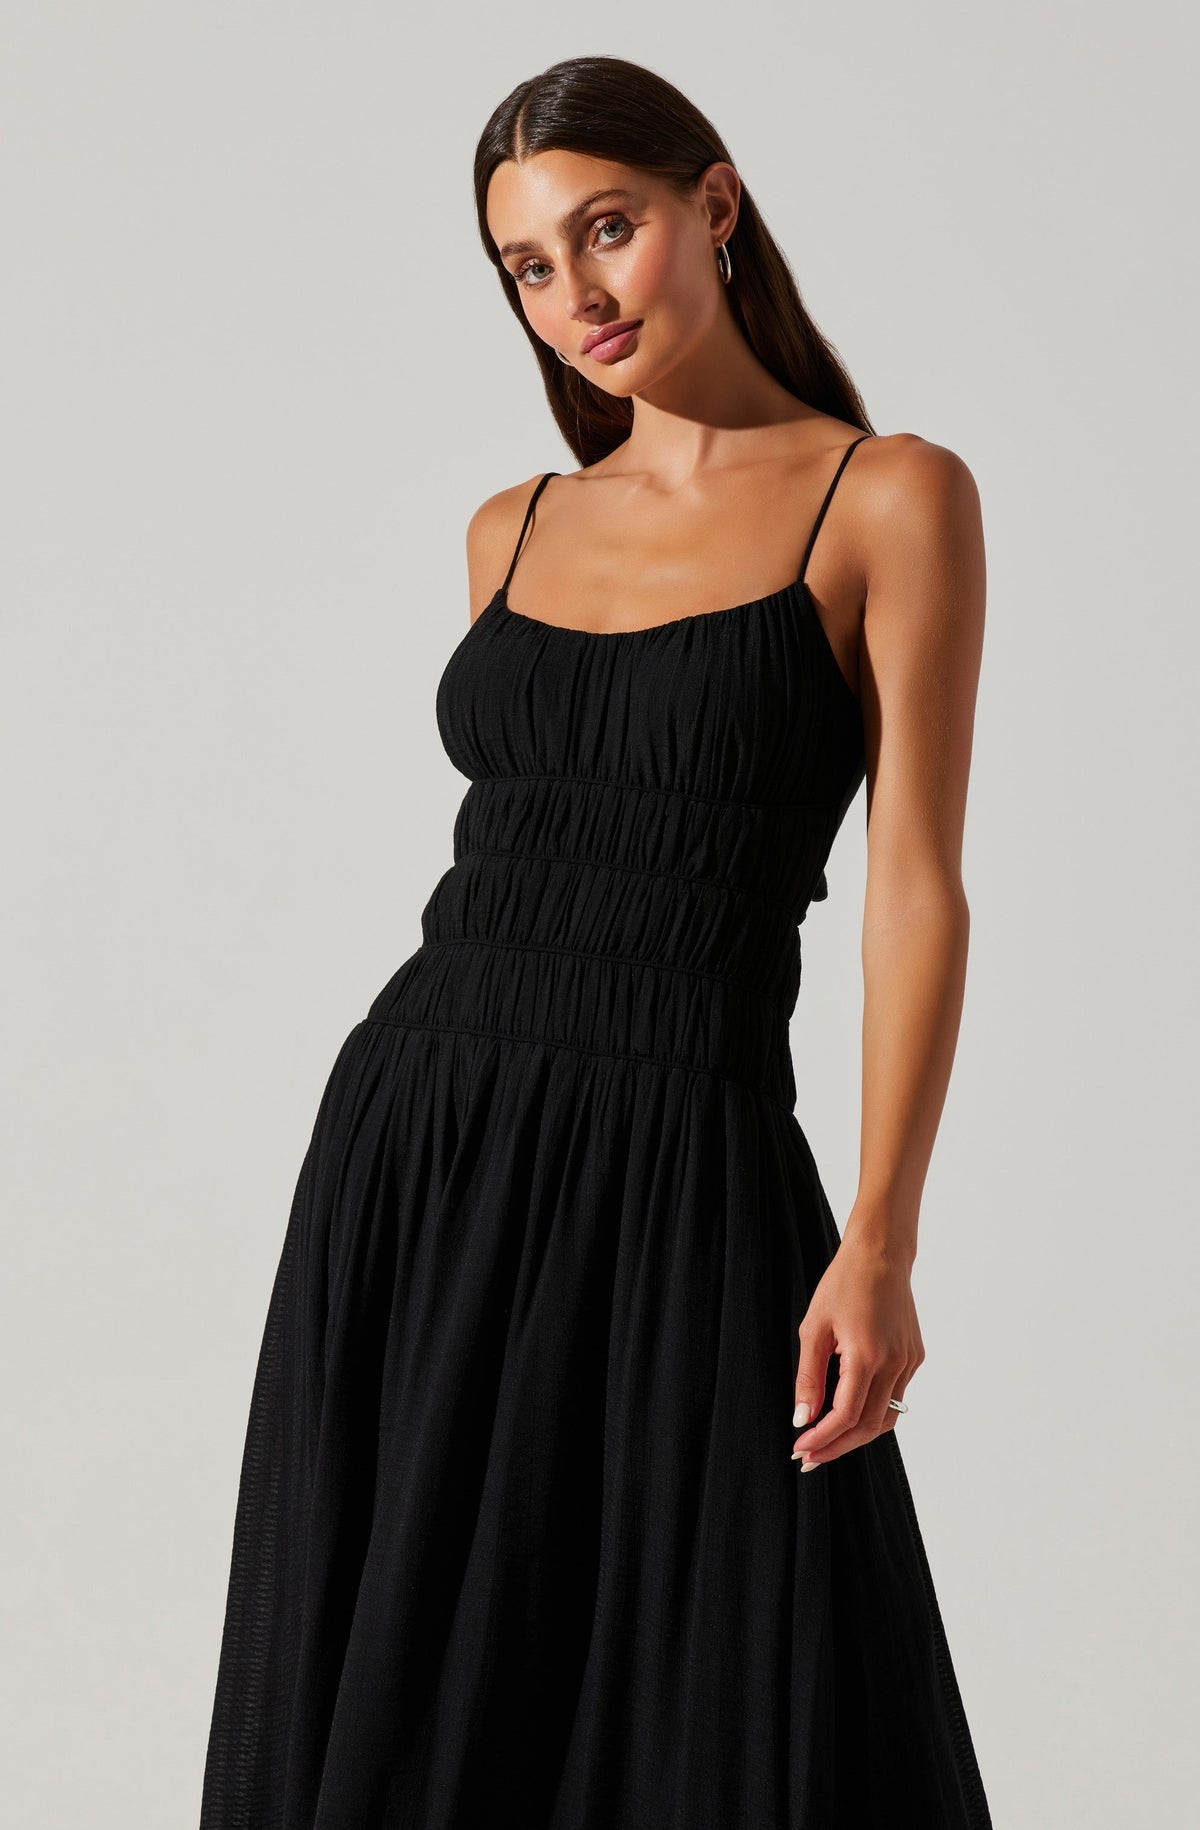 Andrina Smocked Midi Dress in Black